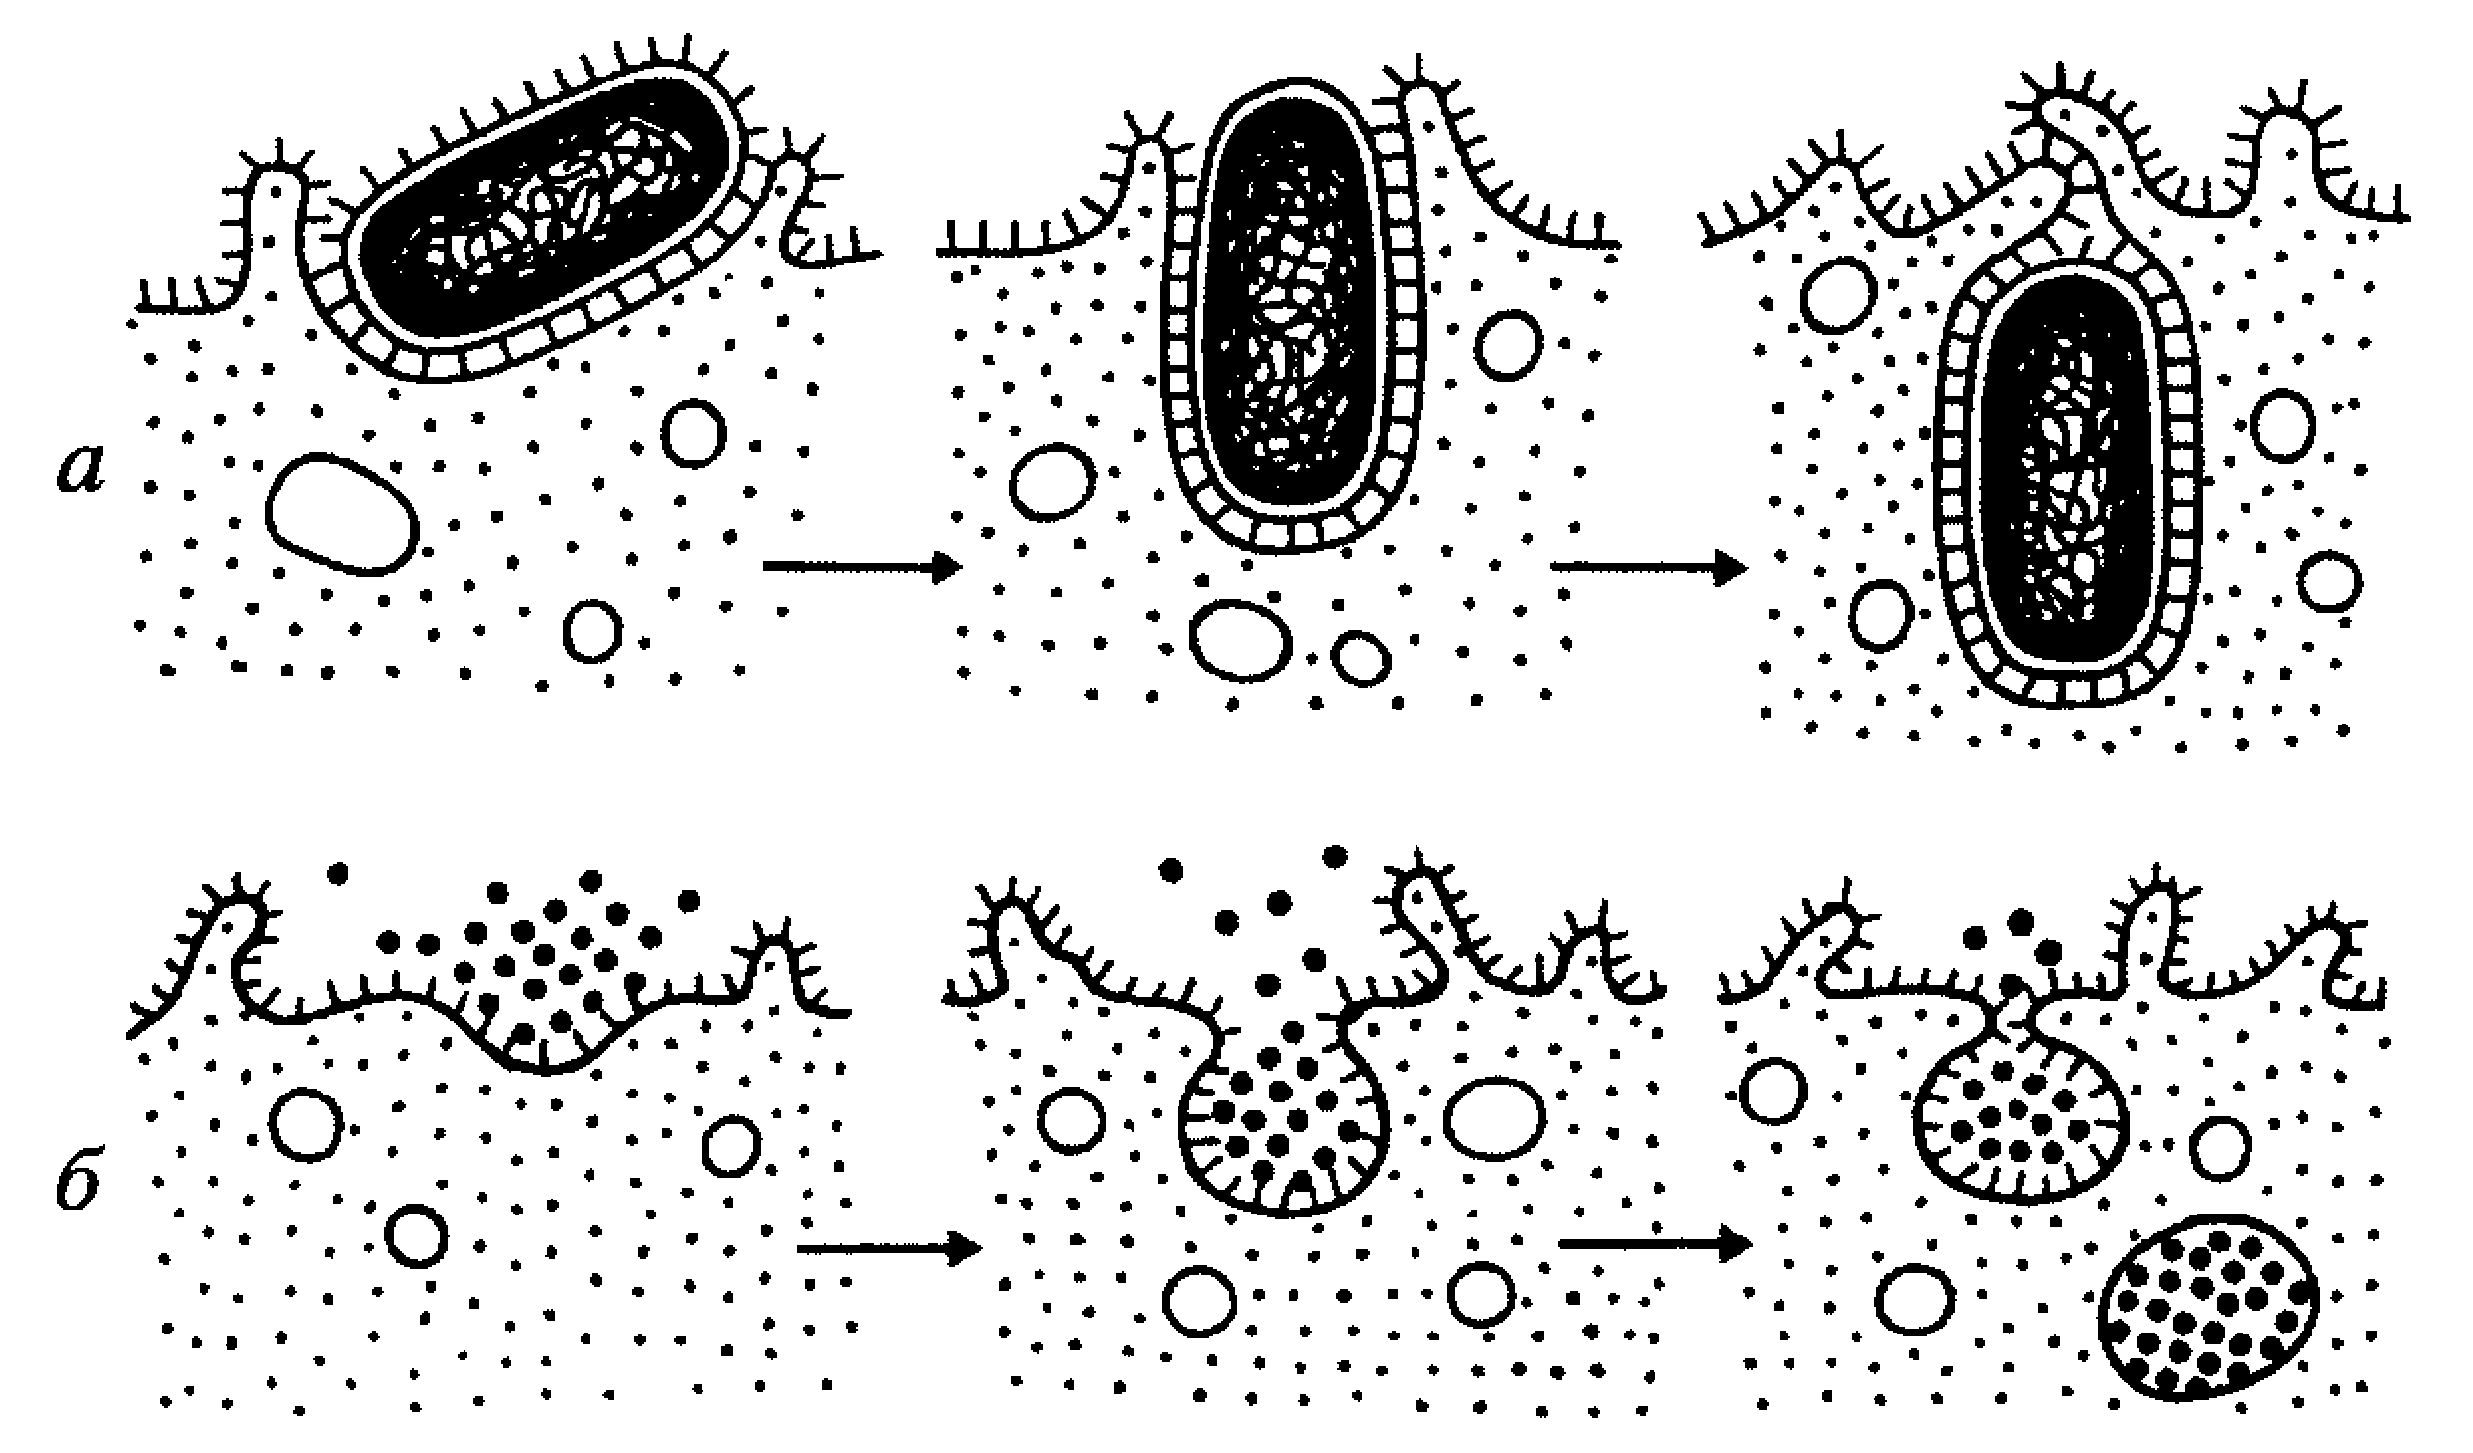 Поглощение клеткой твердых пищевых частиц. Схема фагоцитоза и пиноцитоза. Схема процессов фагоцитоза и пиноцитоза. Фагоцитоз и пиноцитоз схема. Плазматическая мембрана пиноцитоз.